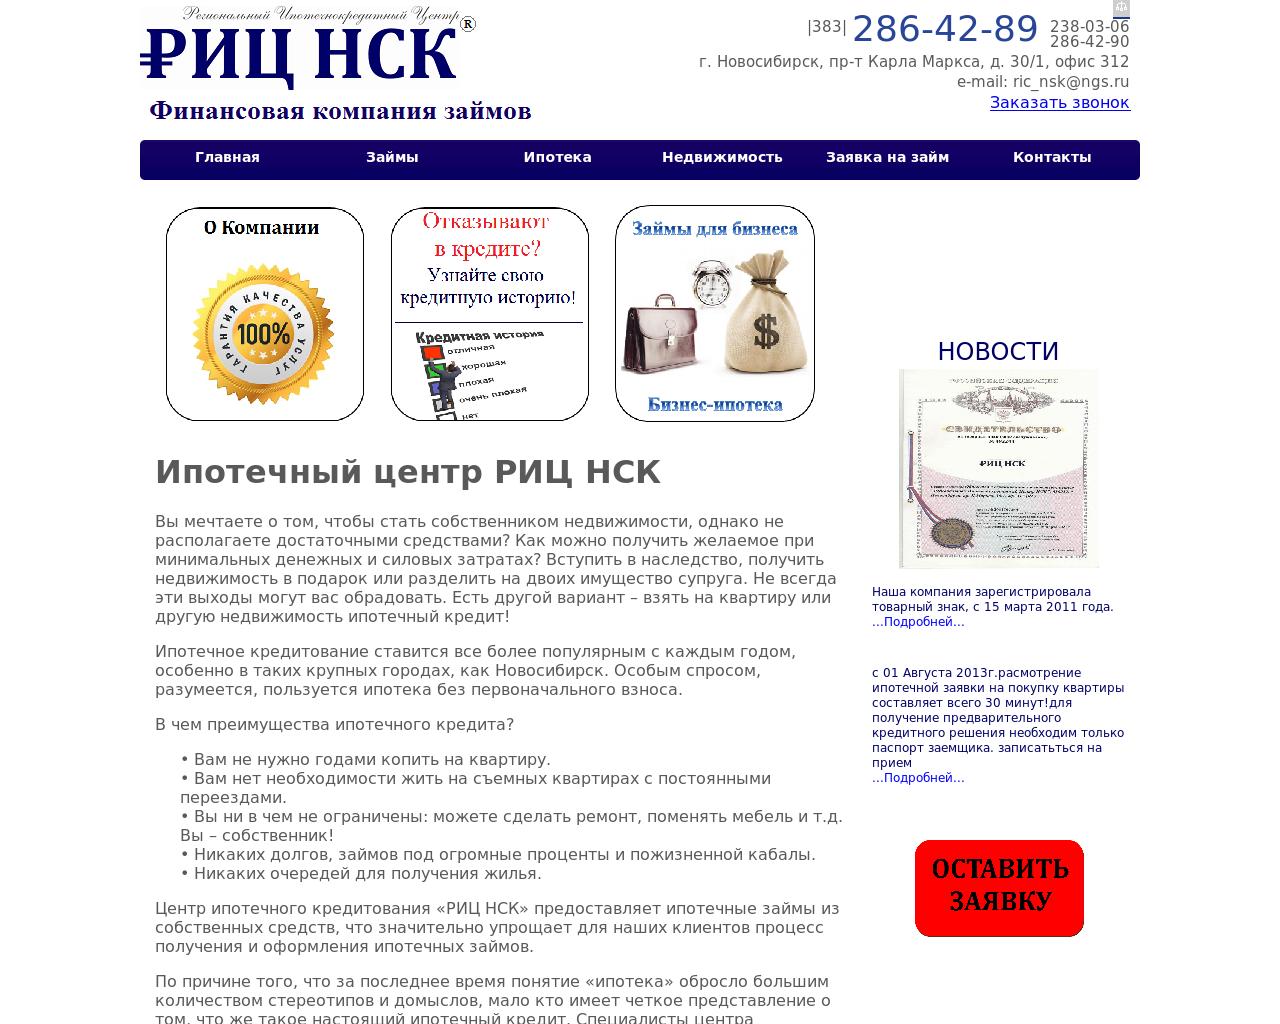 Изображение сайта ricnsk.ru в разрешении 1280x1024